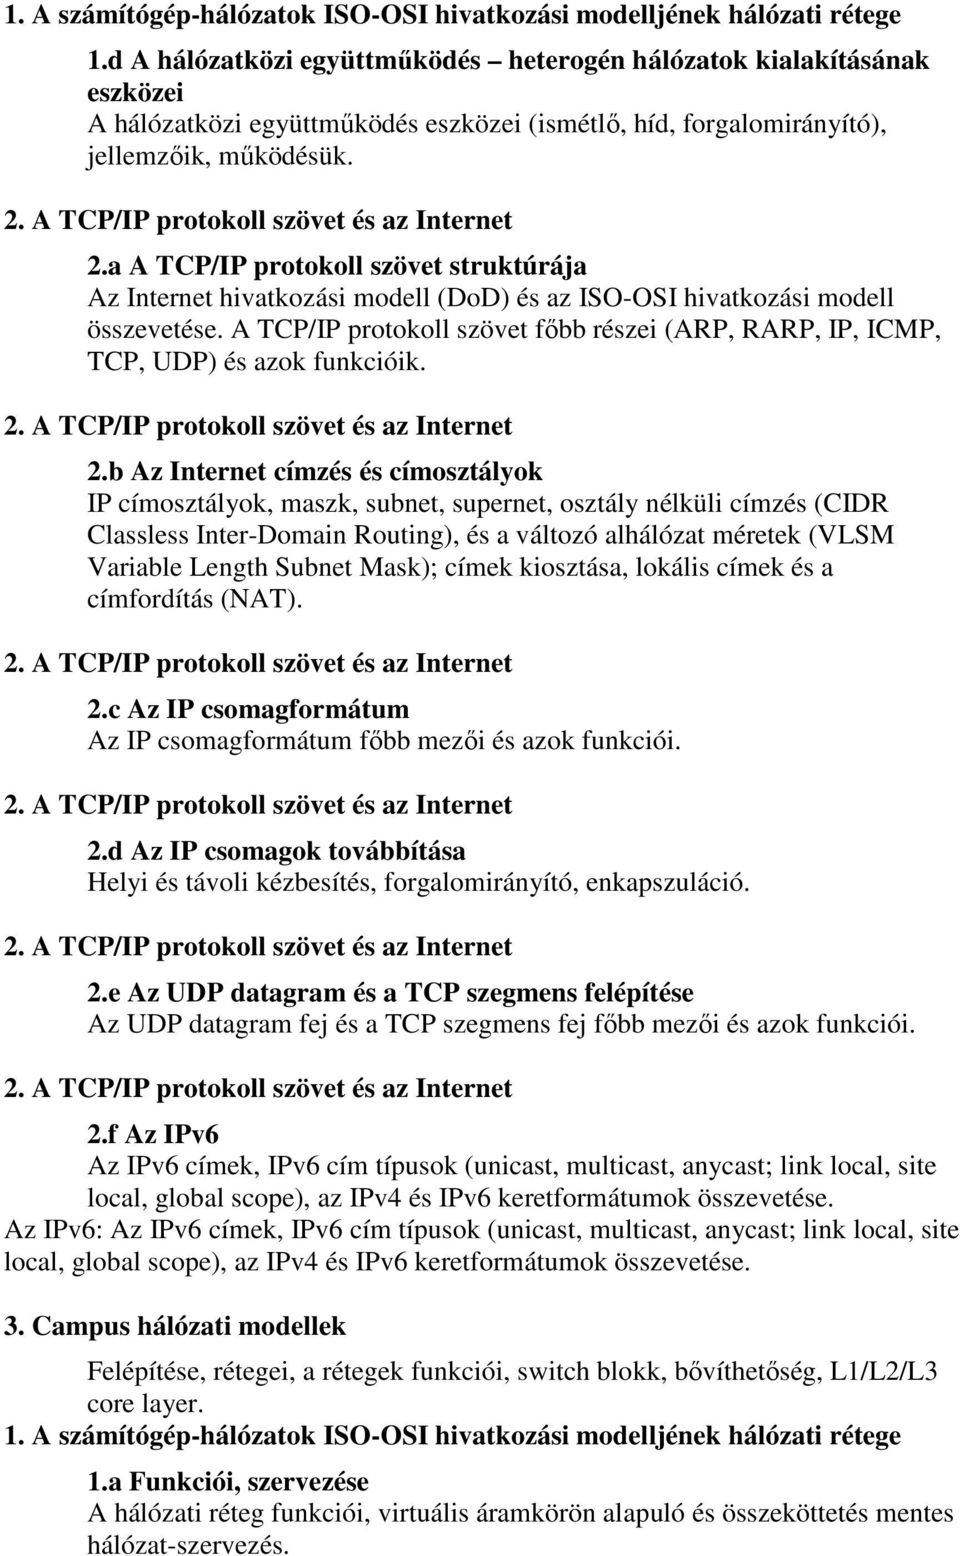 1. A számítógép-hálózatok ISO-OSI hivatkozási modelljének hálózati rétege  1.a Funkciói, szervezése - PDF Free Download